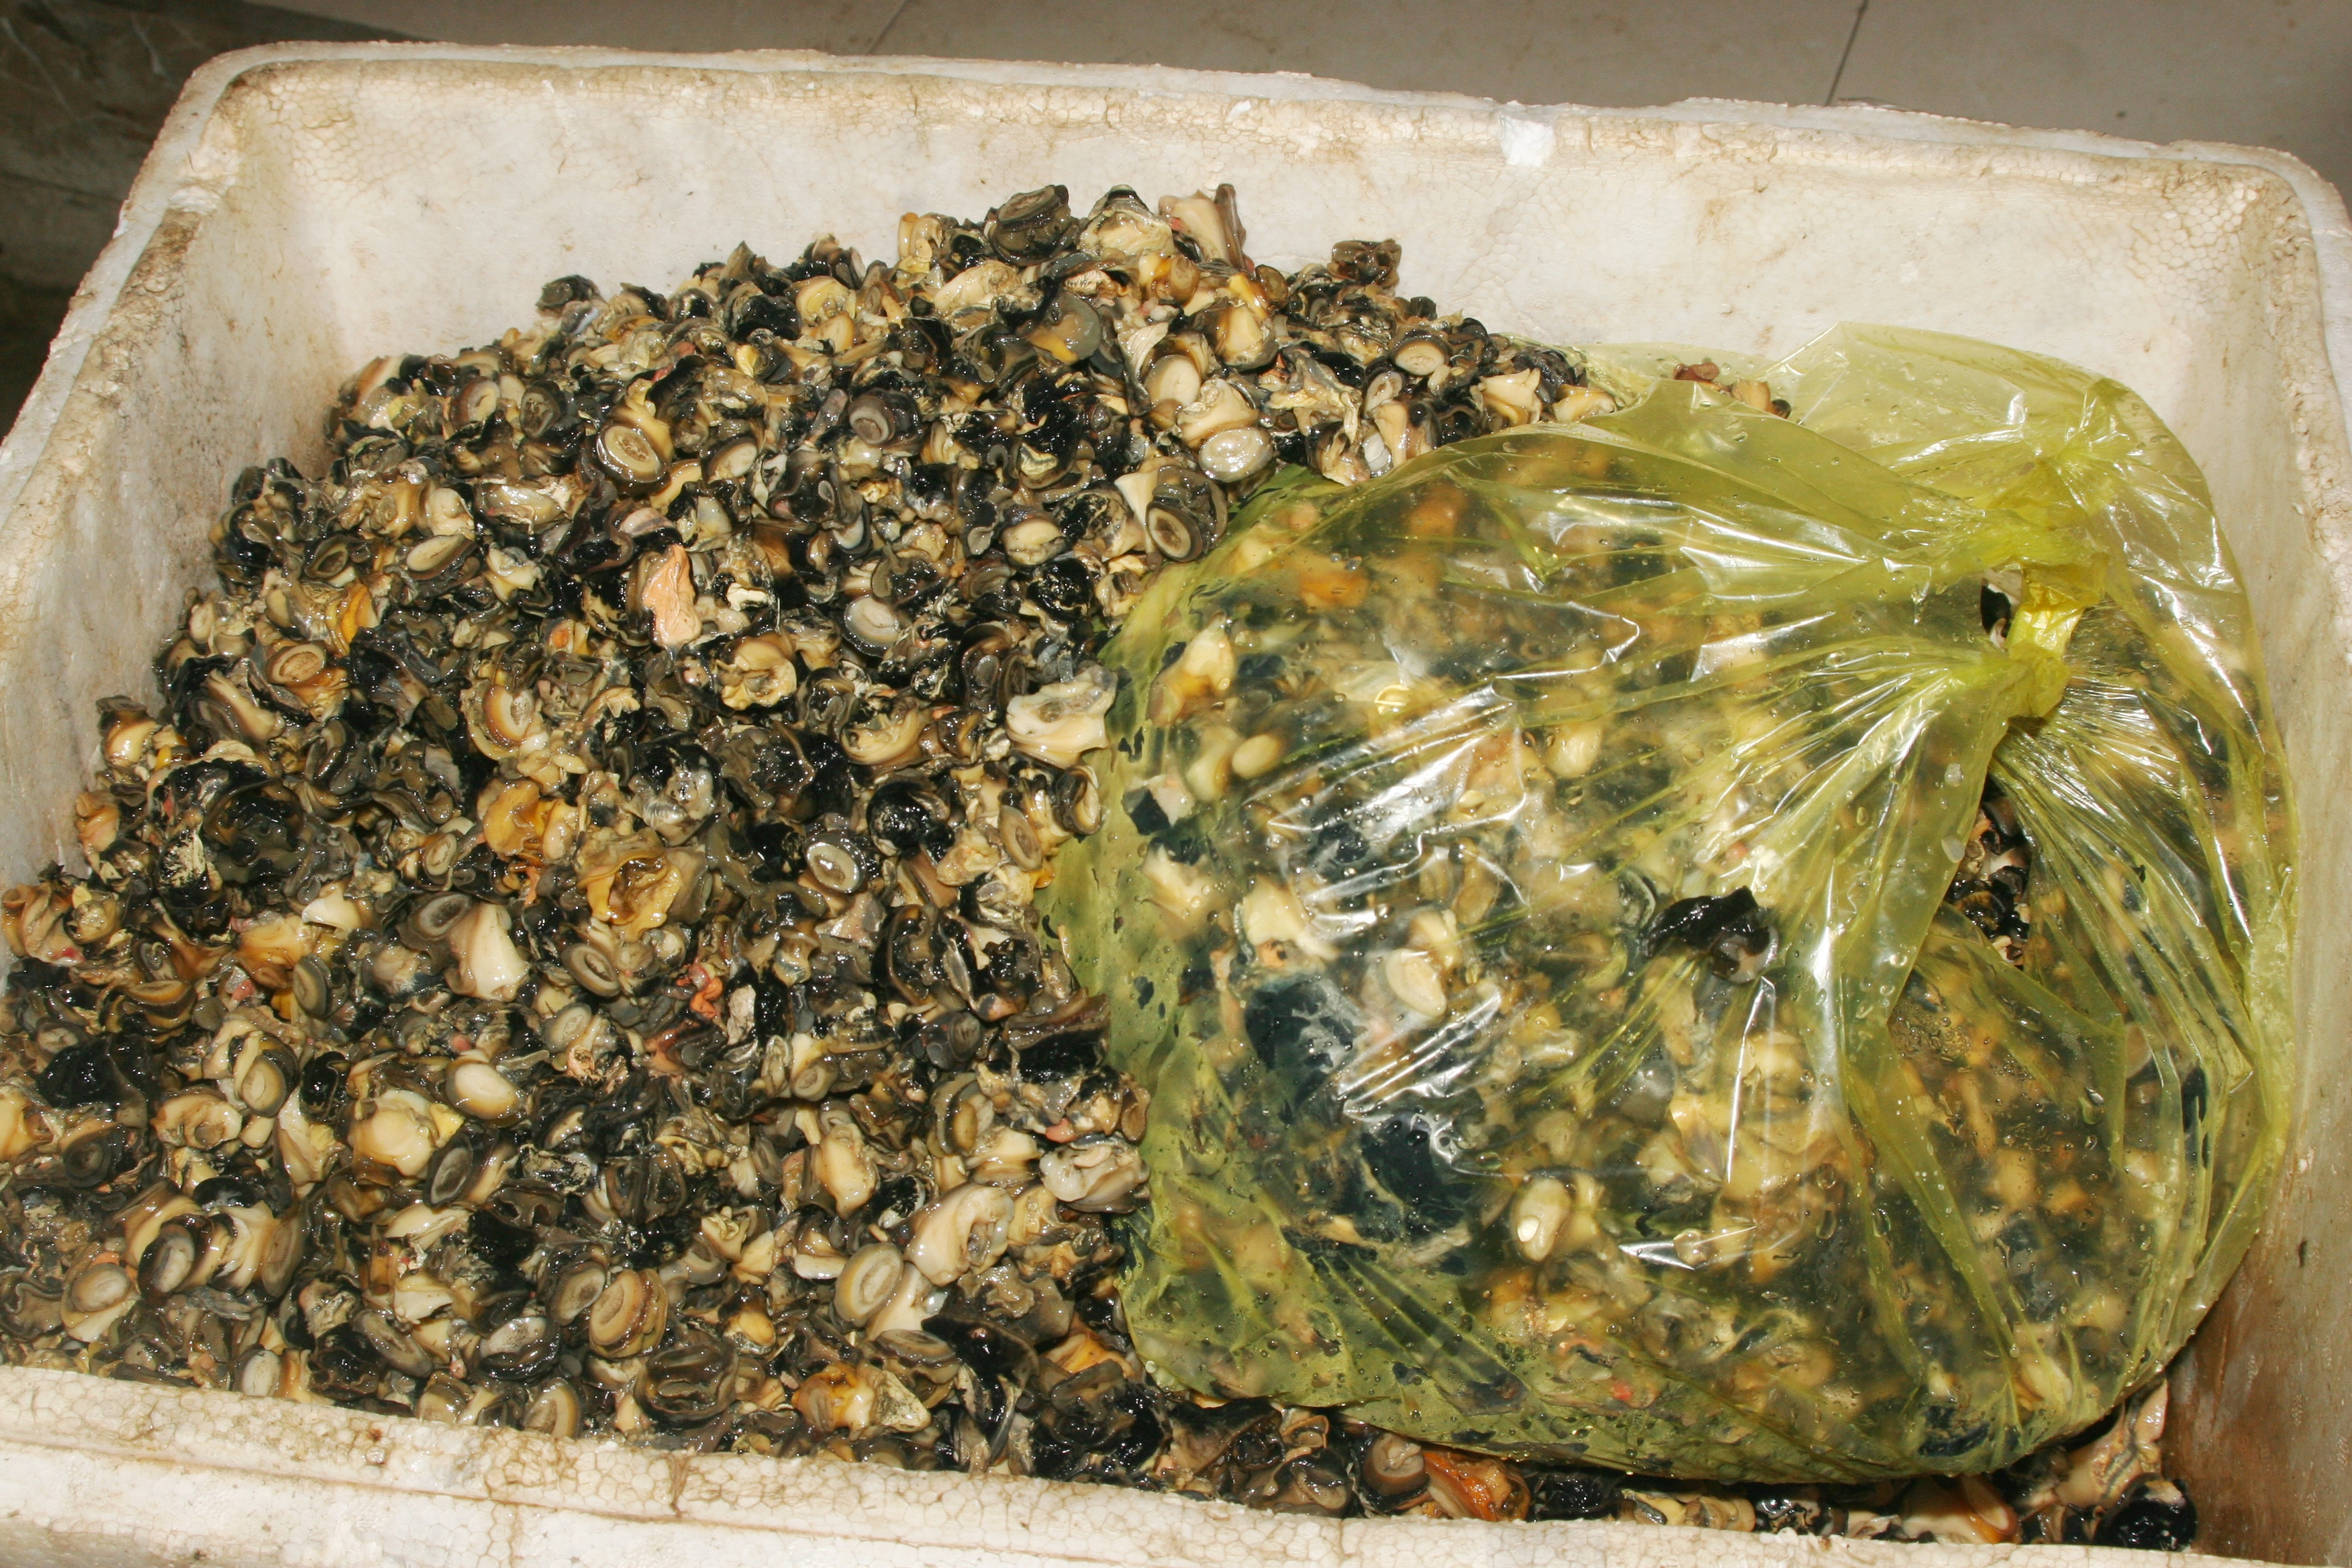 Ruột ốc bươu vàng được thương lái thu mua cho vào thùng xốp gửi đi nhập cho các cơ sở chế biến thành thức ăn nuôi trồng thủy sản. Ảnh: Việt Hùng